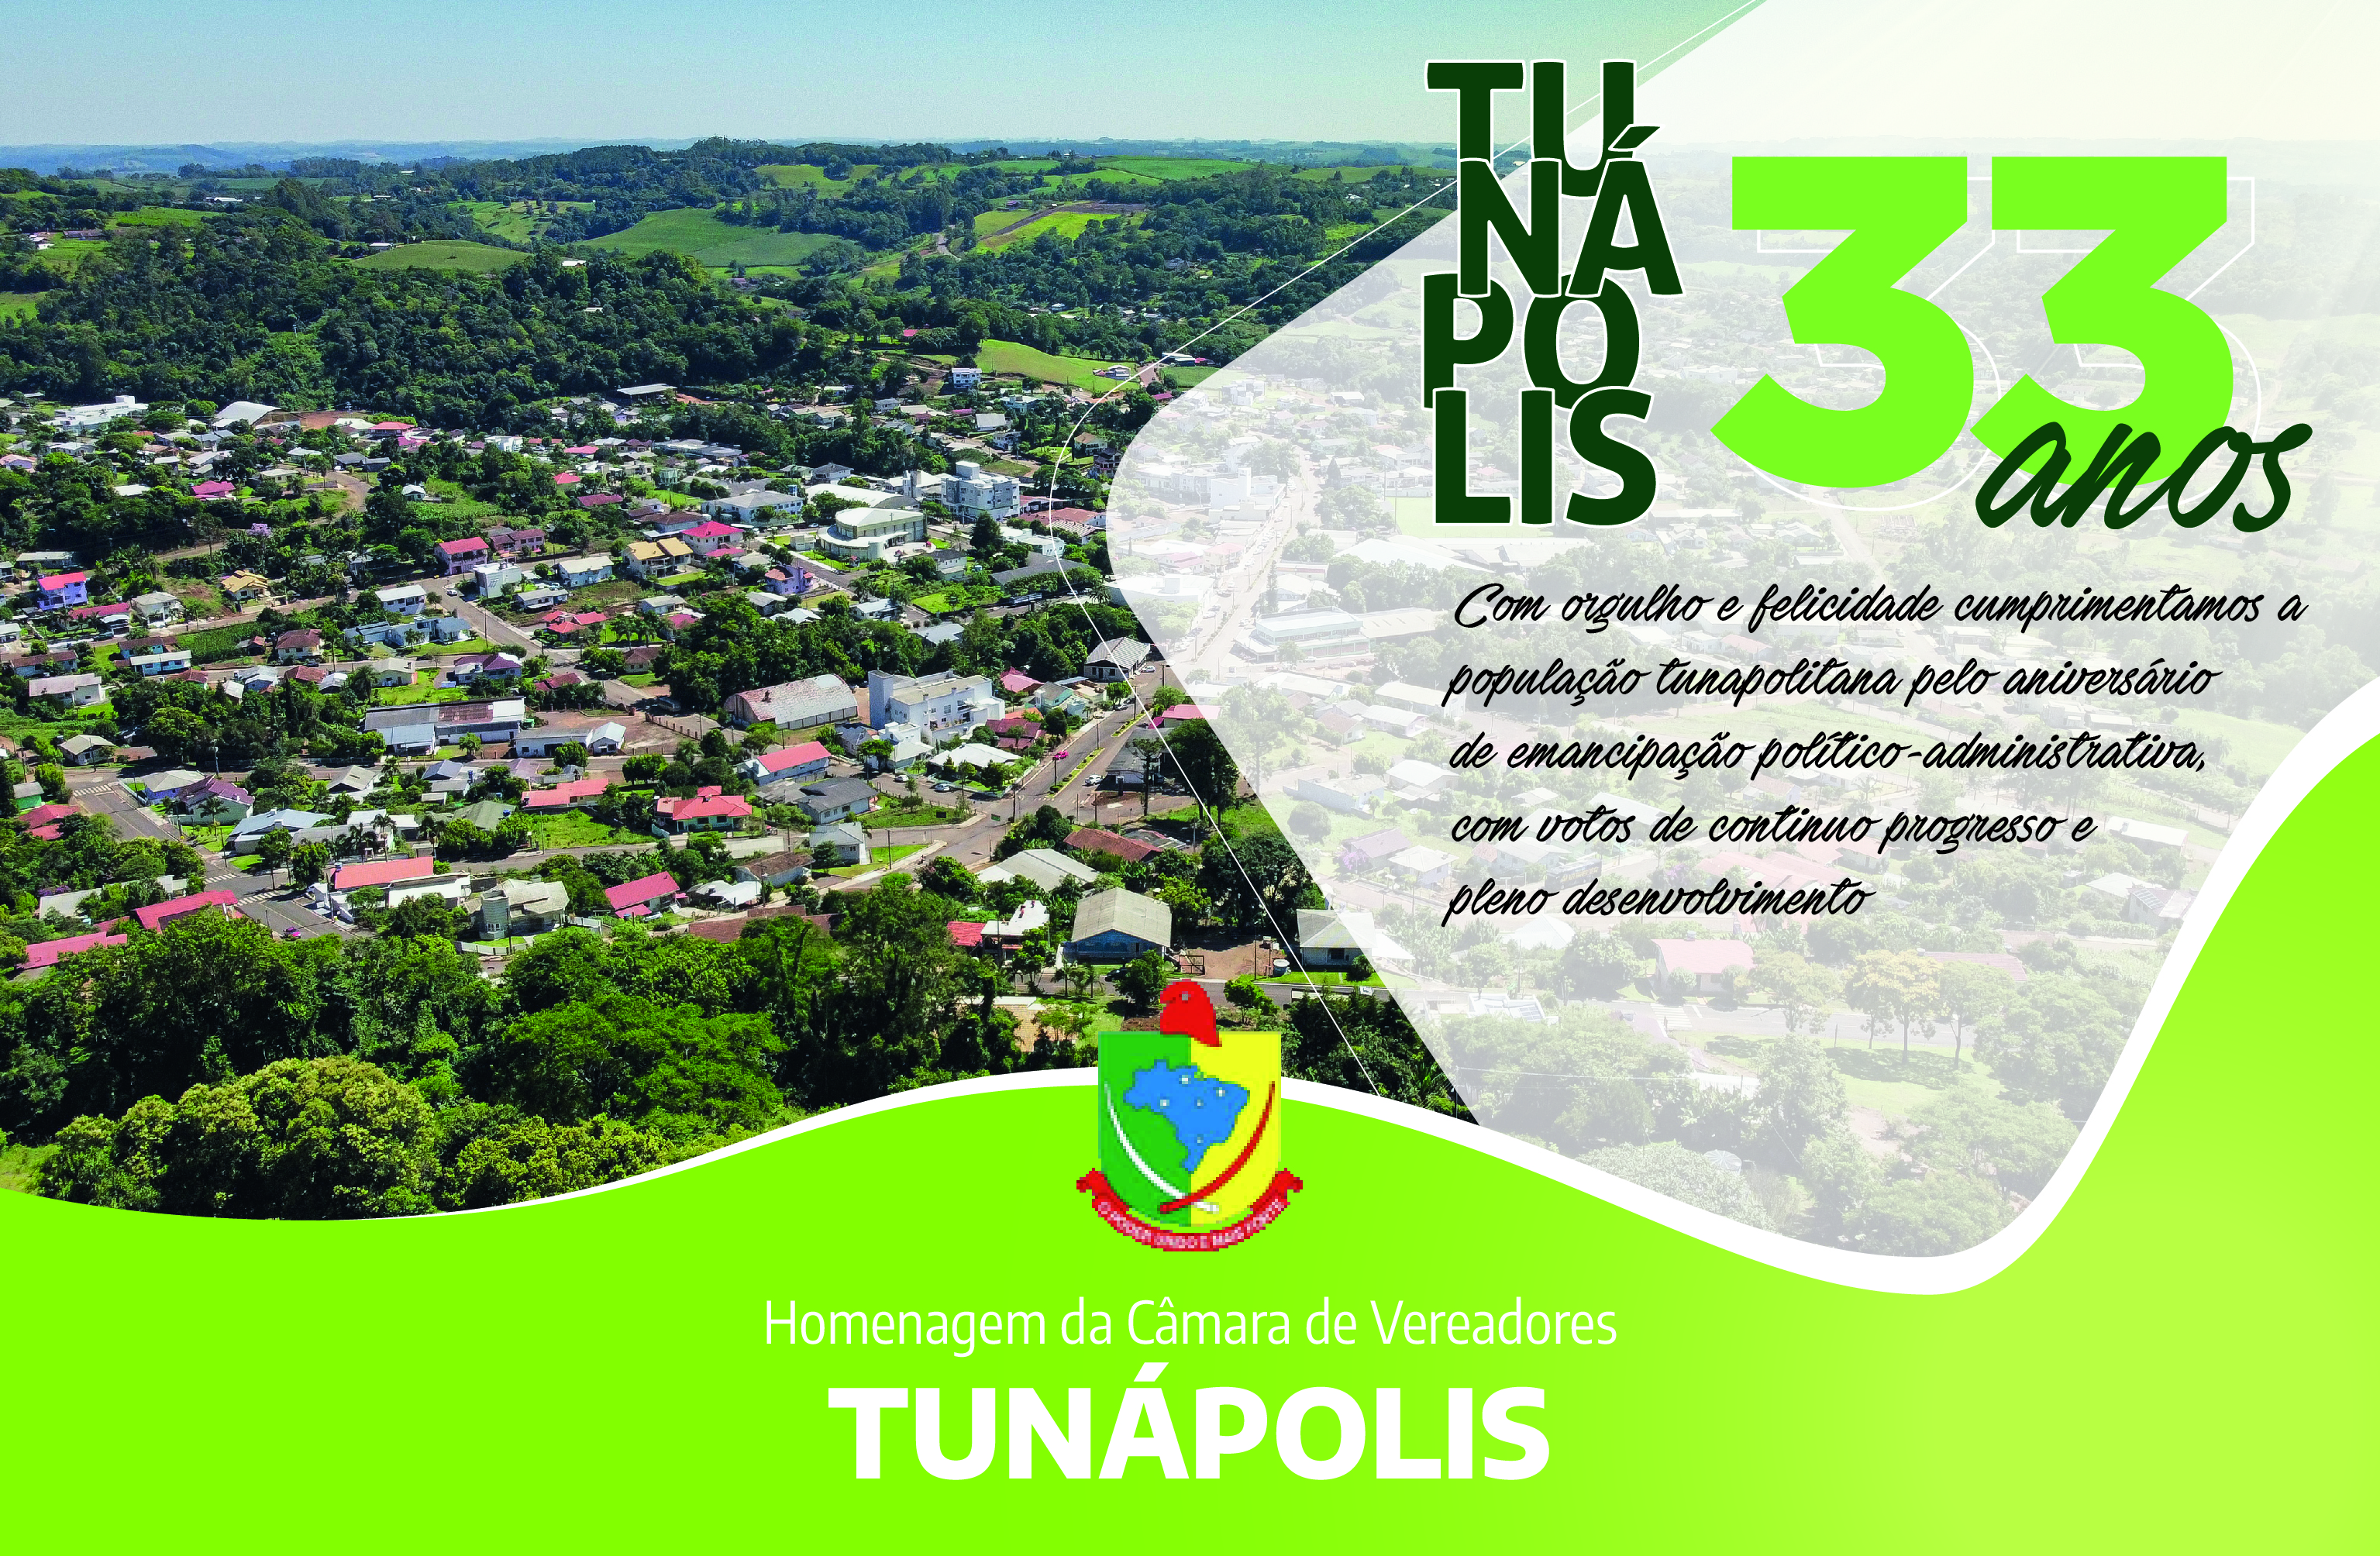 Tunápolis comemora 33 anos de emancipação política-administrativa